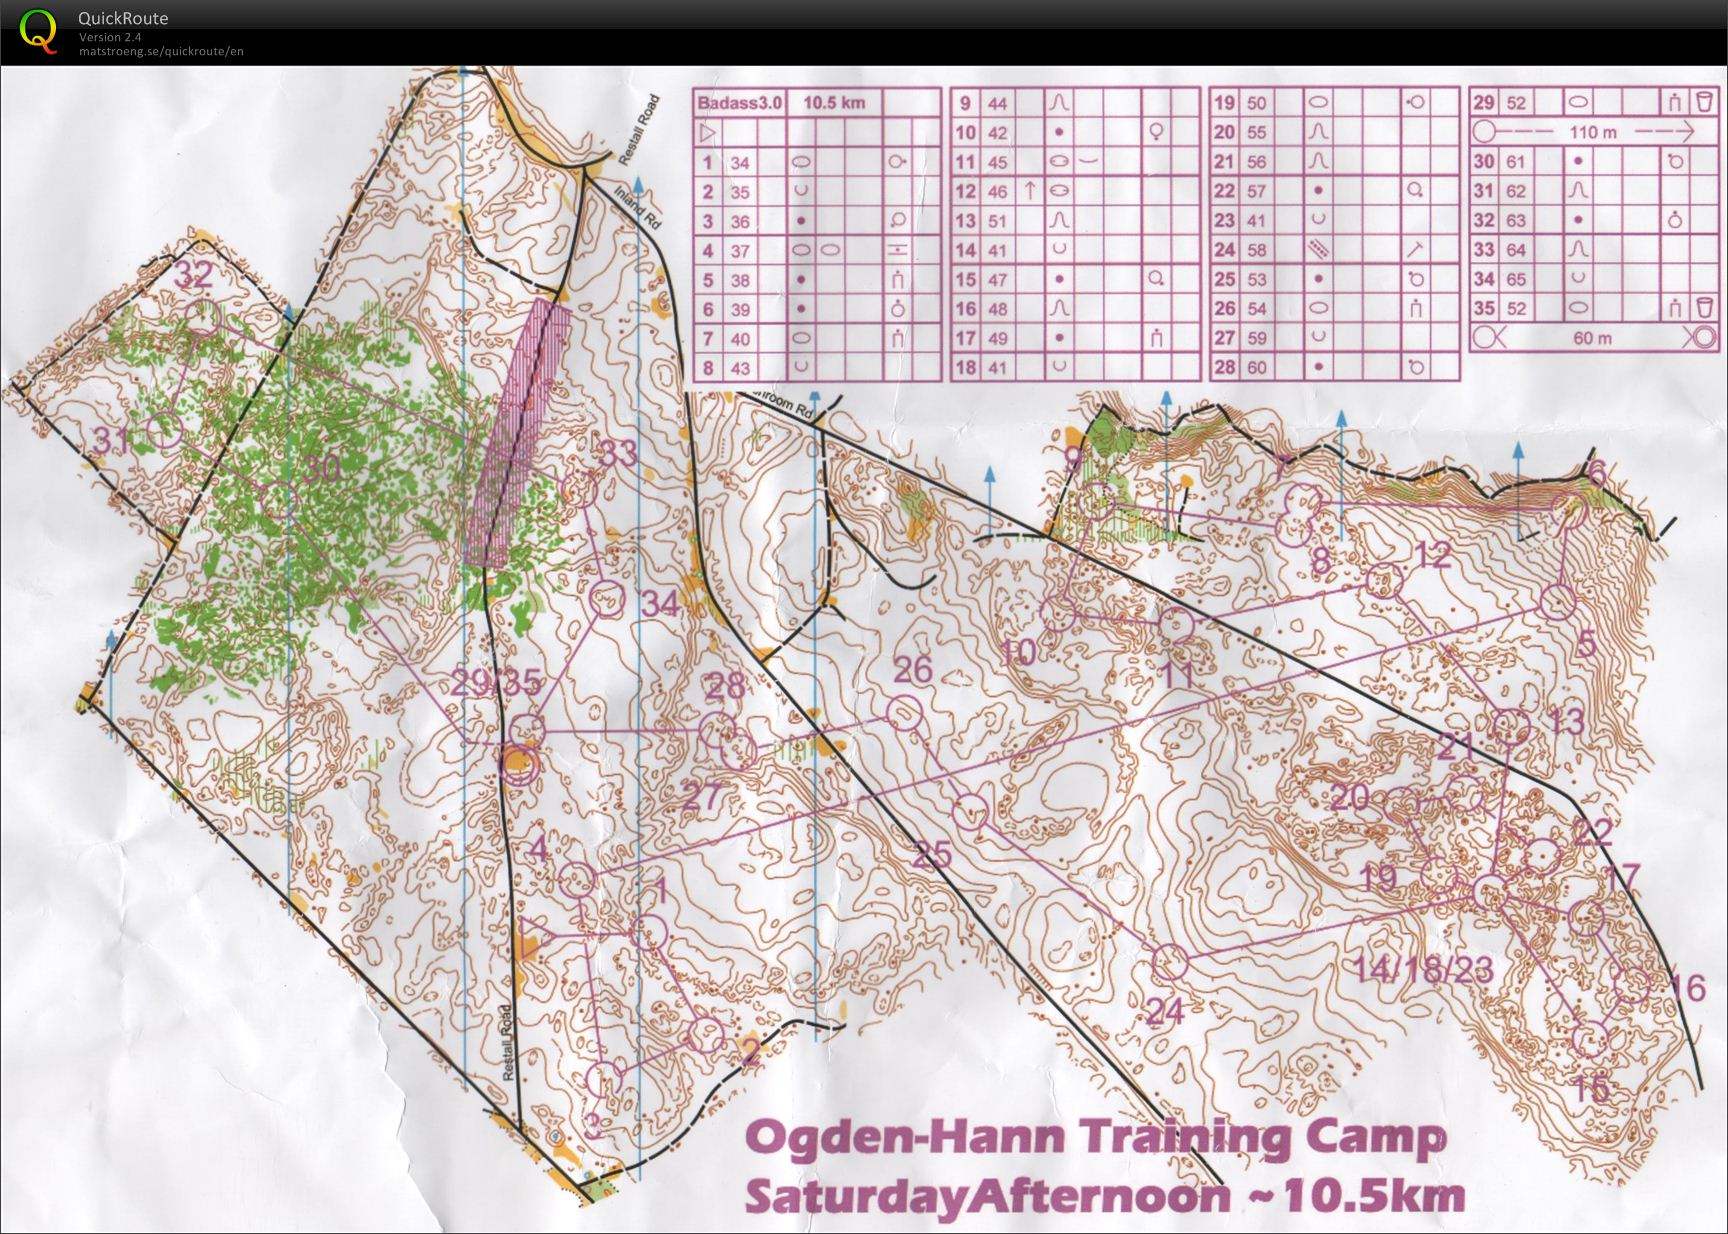 Ogden-Hann Training Camp - Badass 3.0 (16-03-2012)